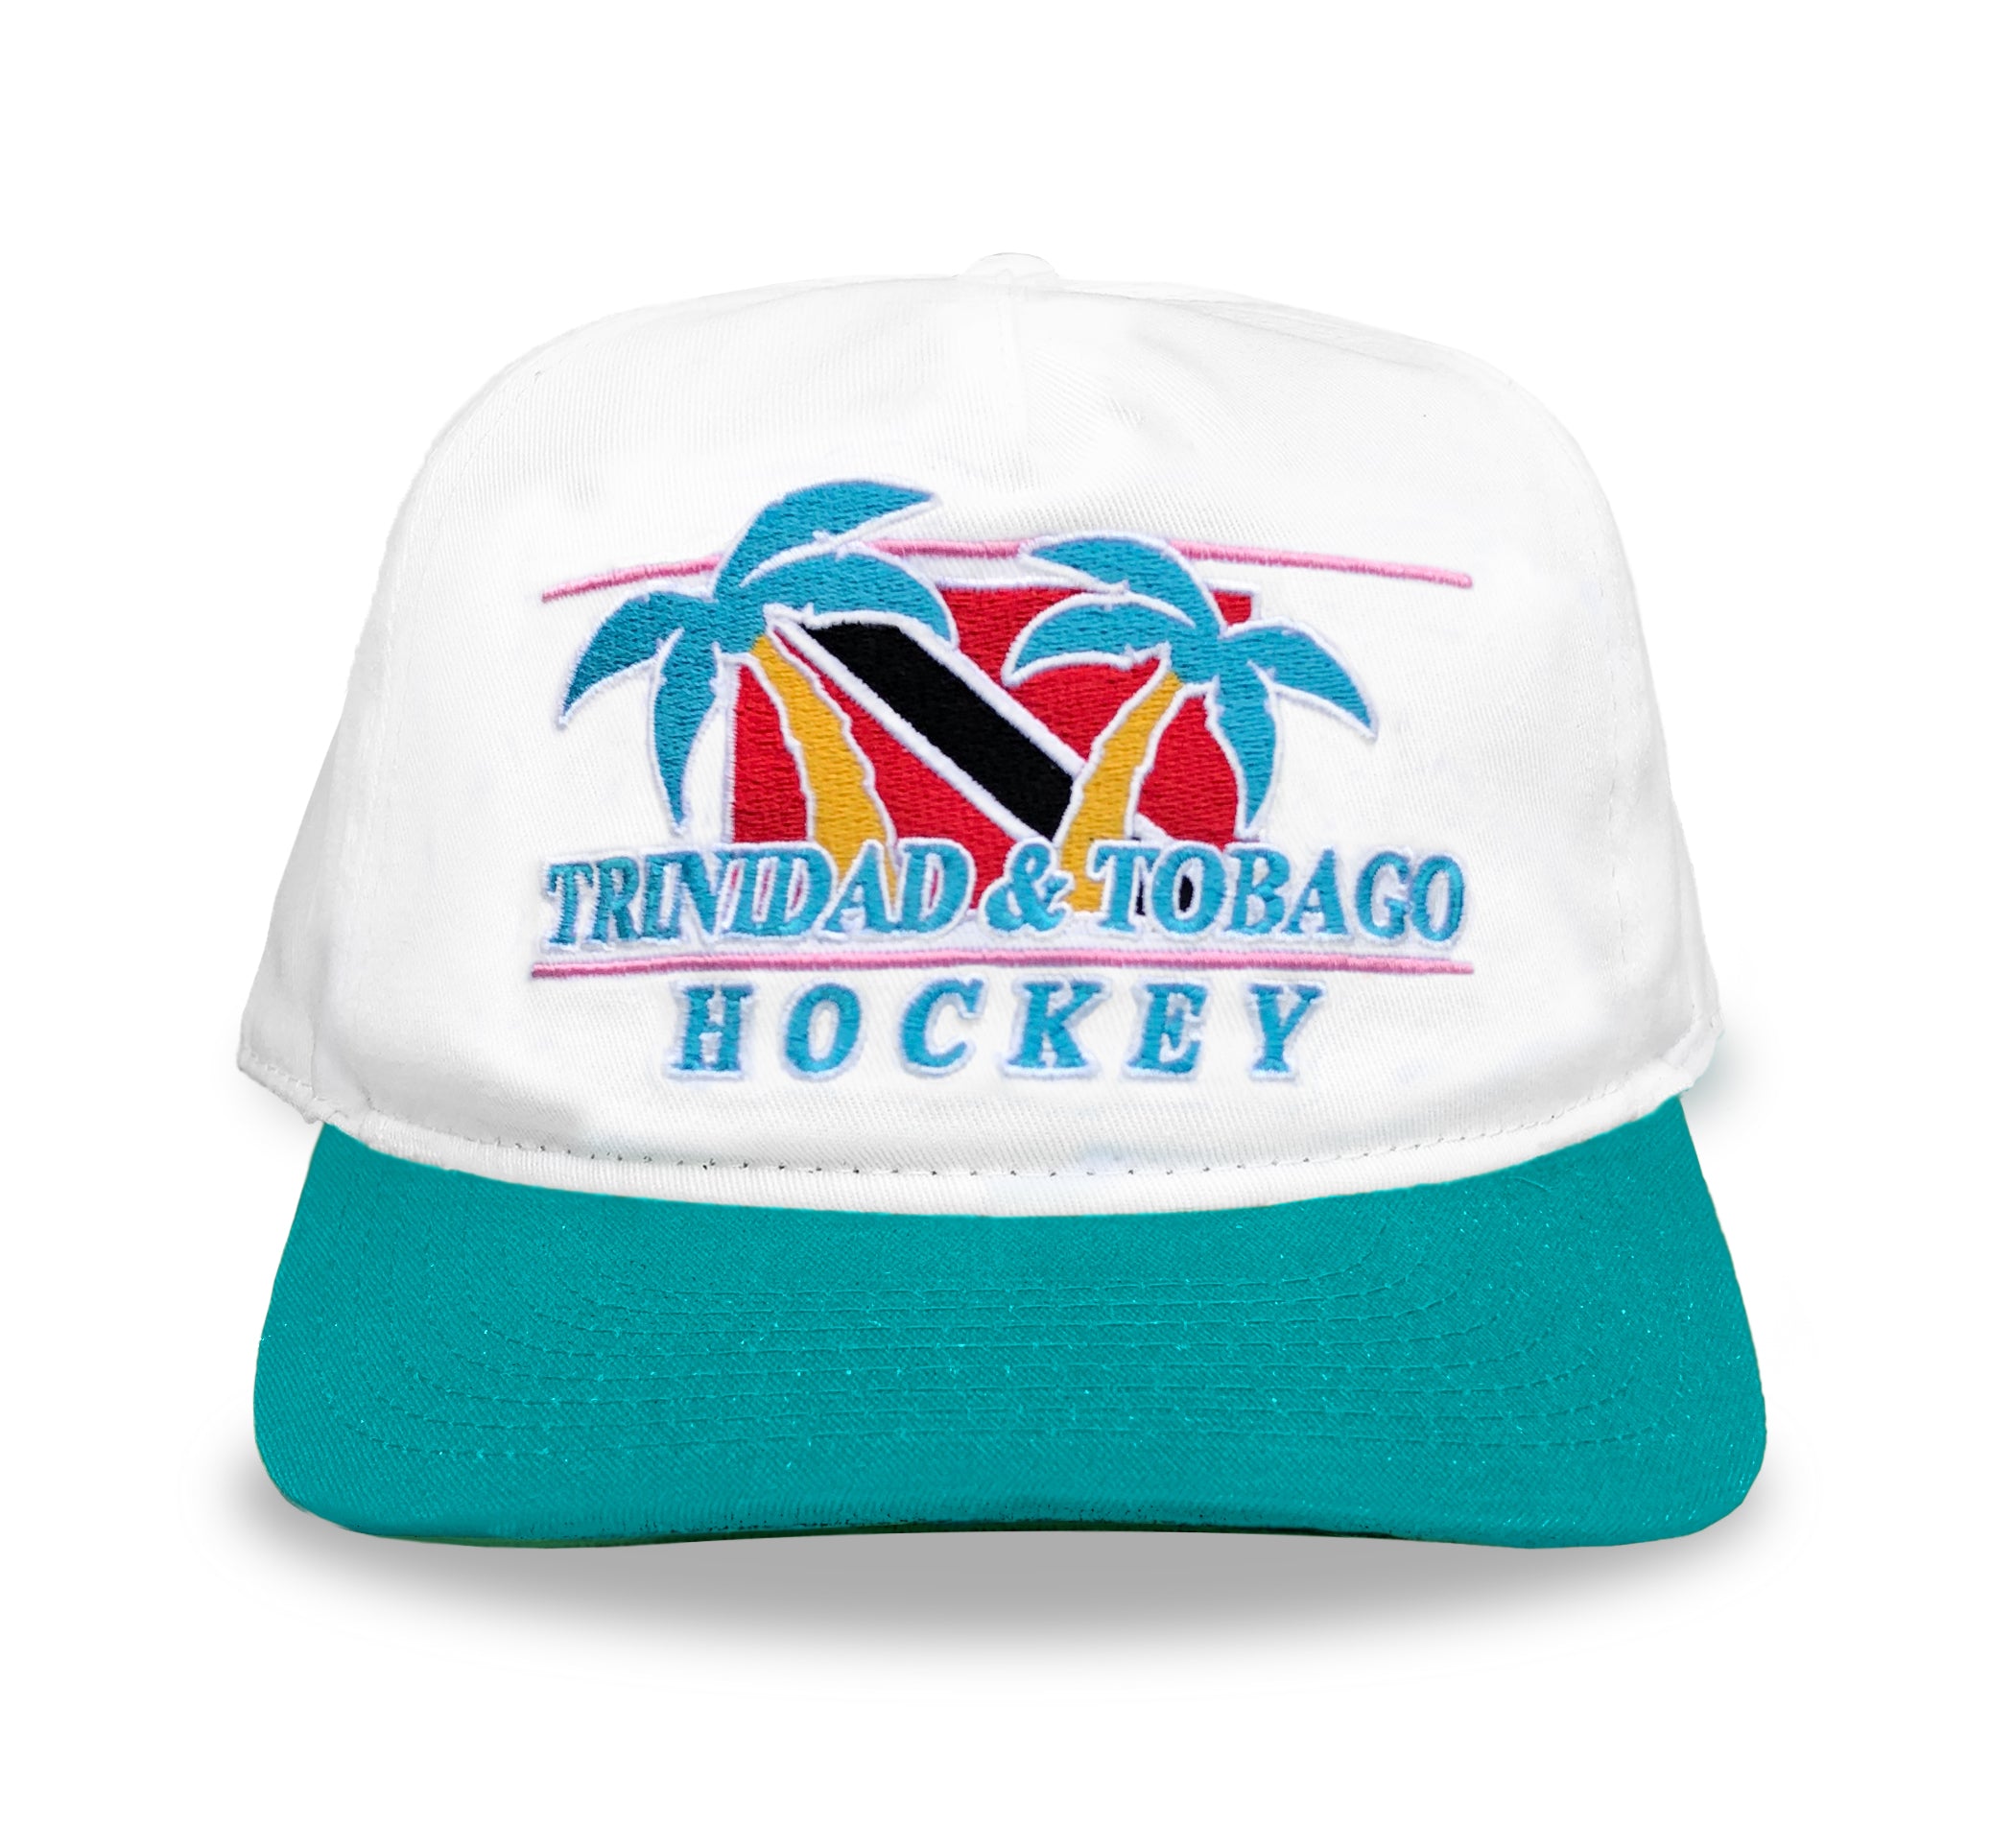 Trinidad & Tobago Hockey